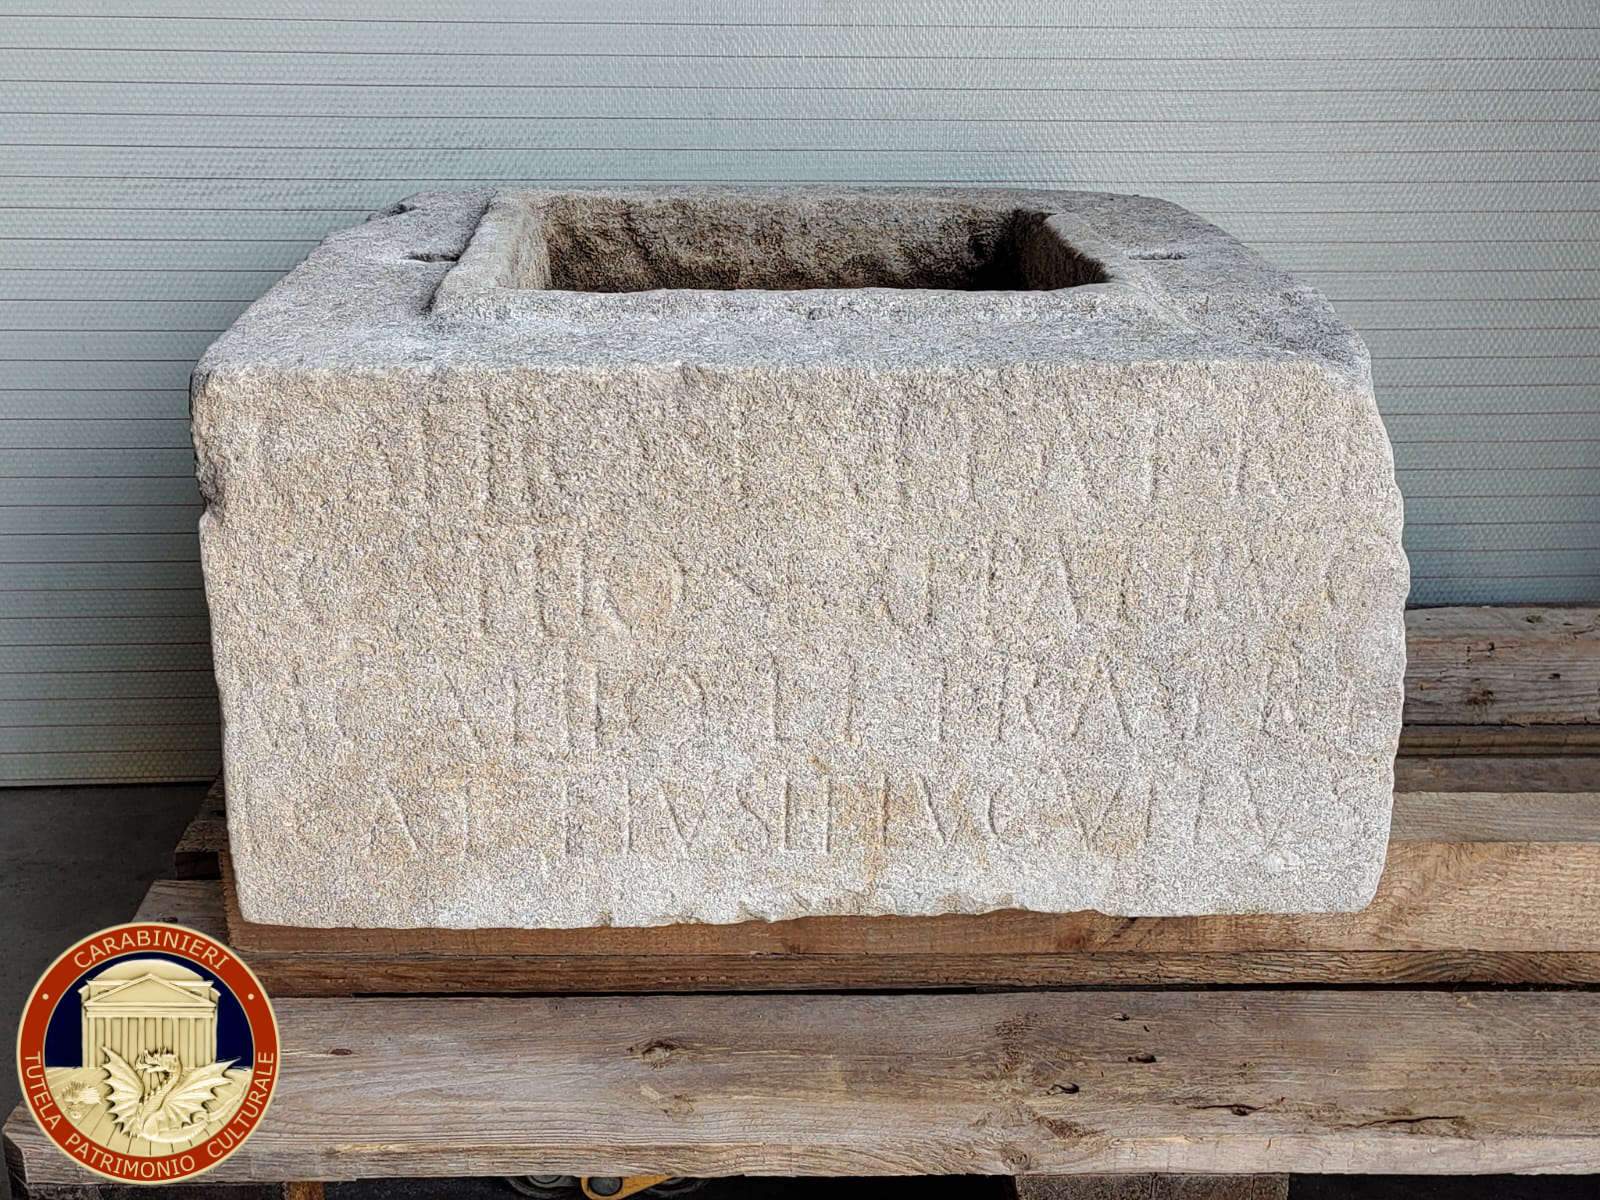 Les carabiniers remettent une précieuse urne romaine au musée national de Concordia